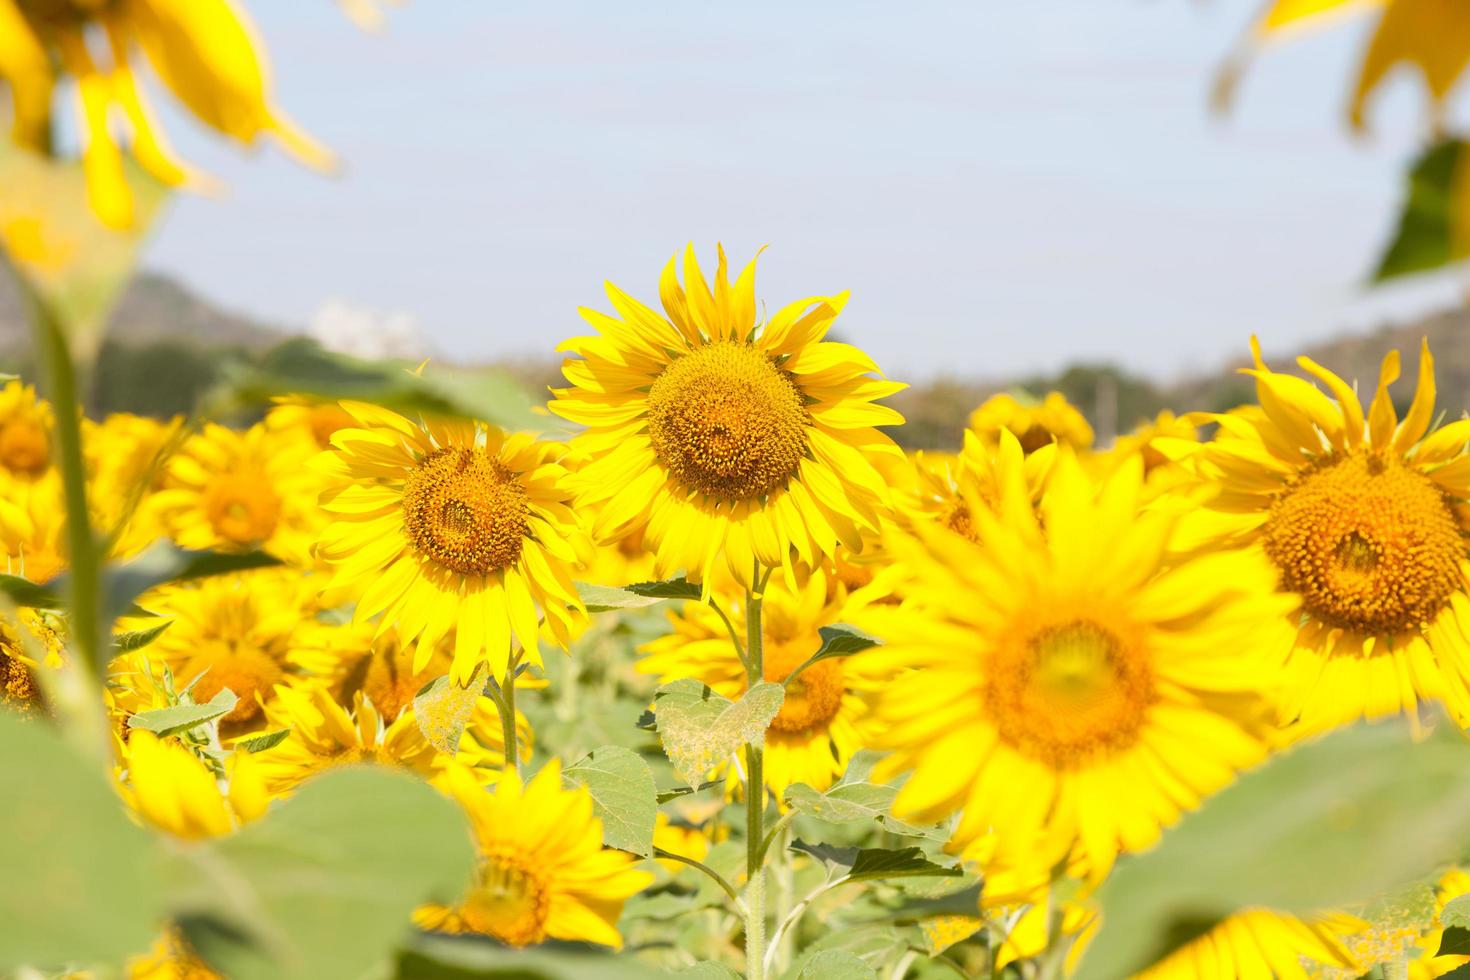 zonnebloemen op een veld foto